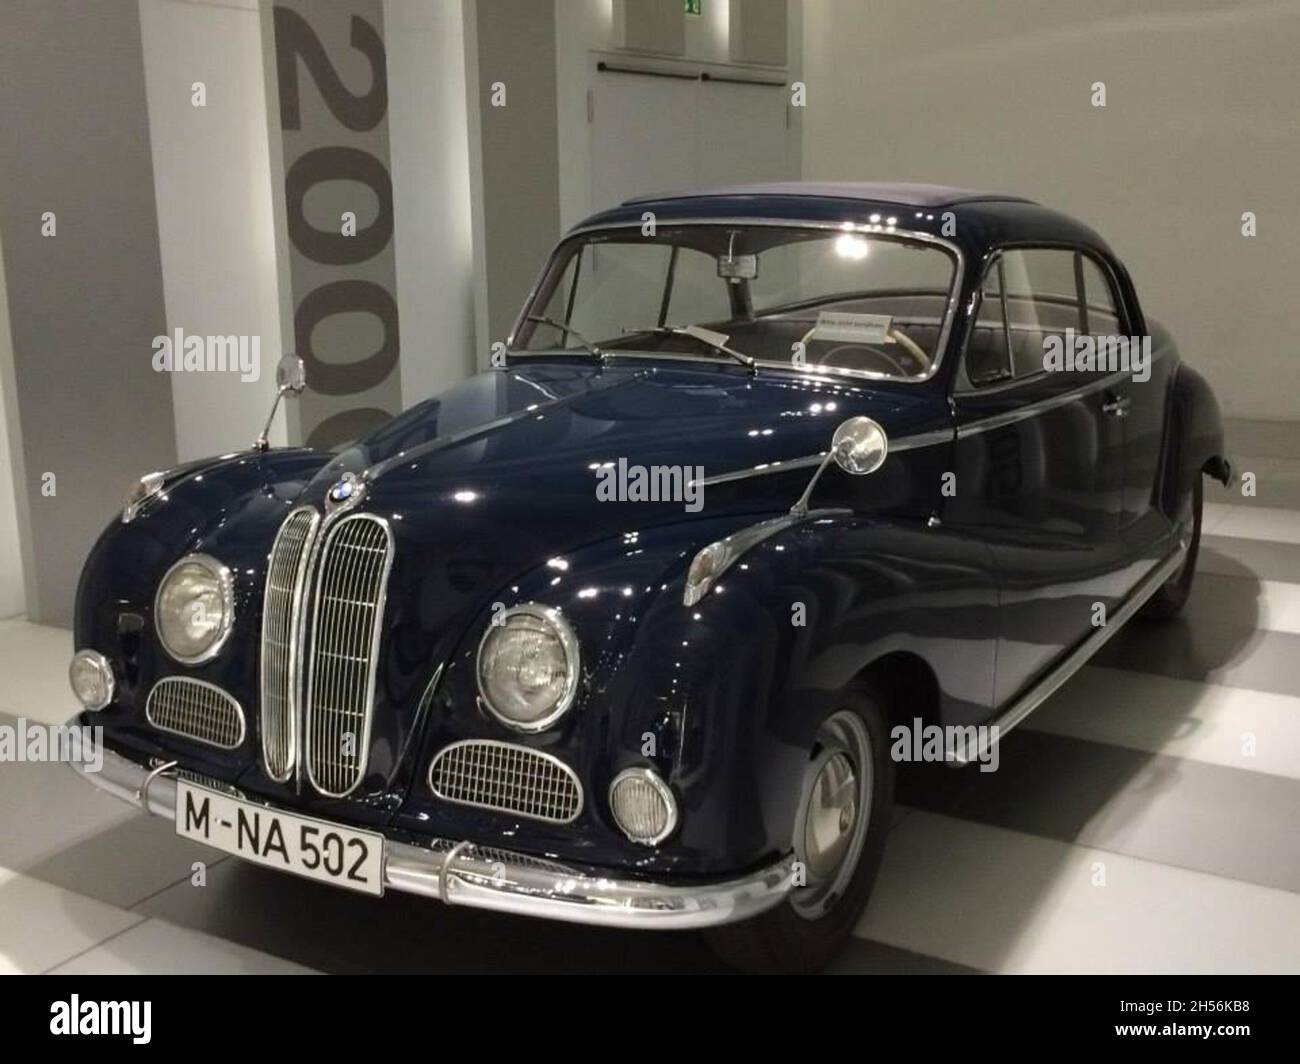 BMW 502: Vue de face, couleur bleue, année 1954, 2 portes.Il a été produit entre 1954 et 1958.Musée BMW : Welt - Munich - Allemagne. Banque D'Images